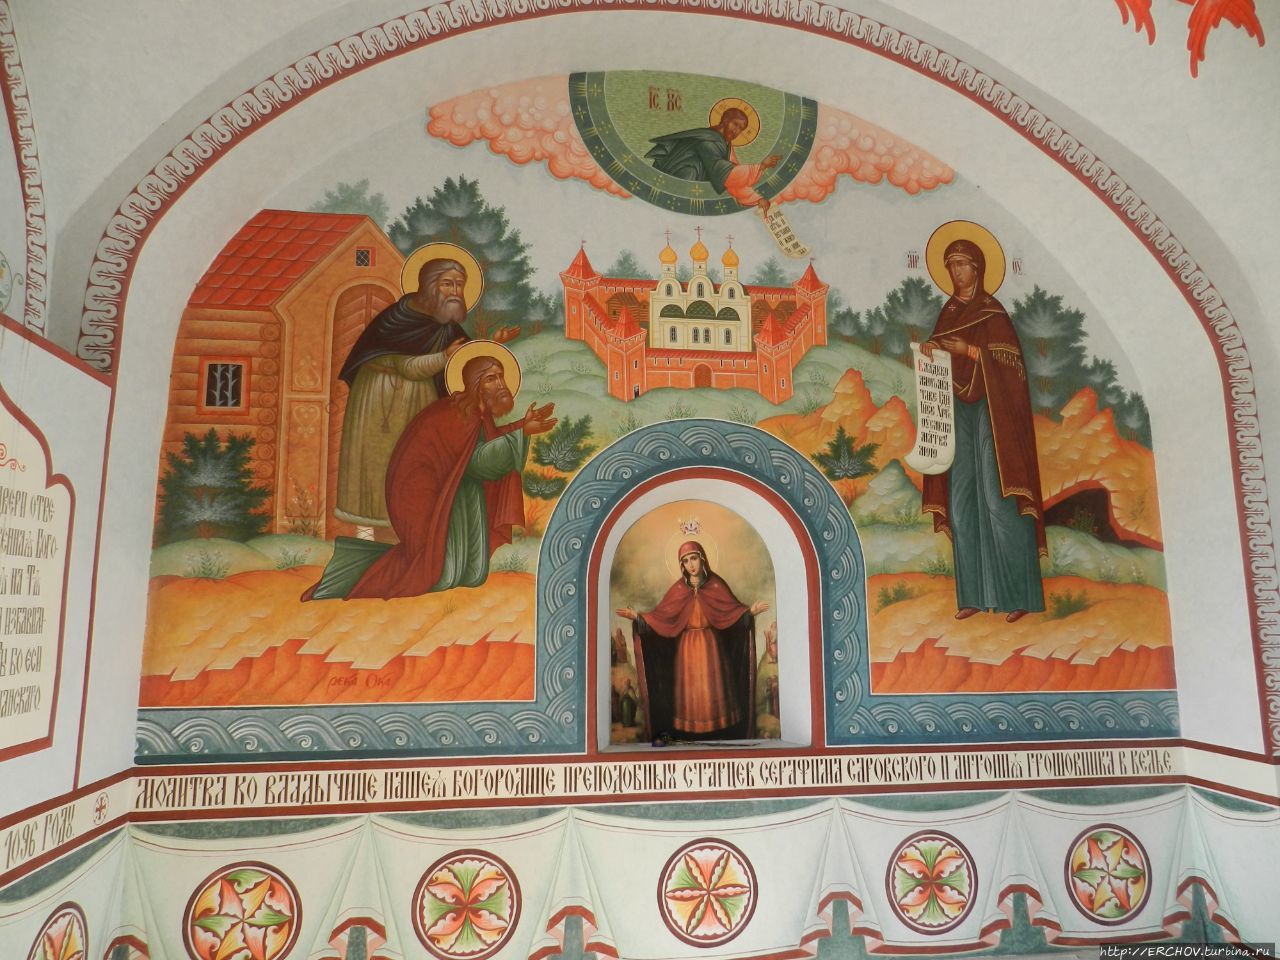 Спасо-Преображенский монастырь Муром, Россия